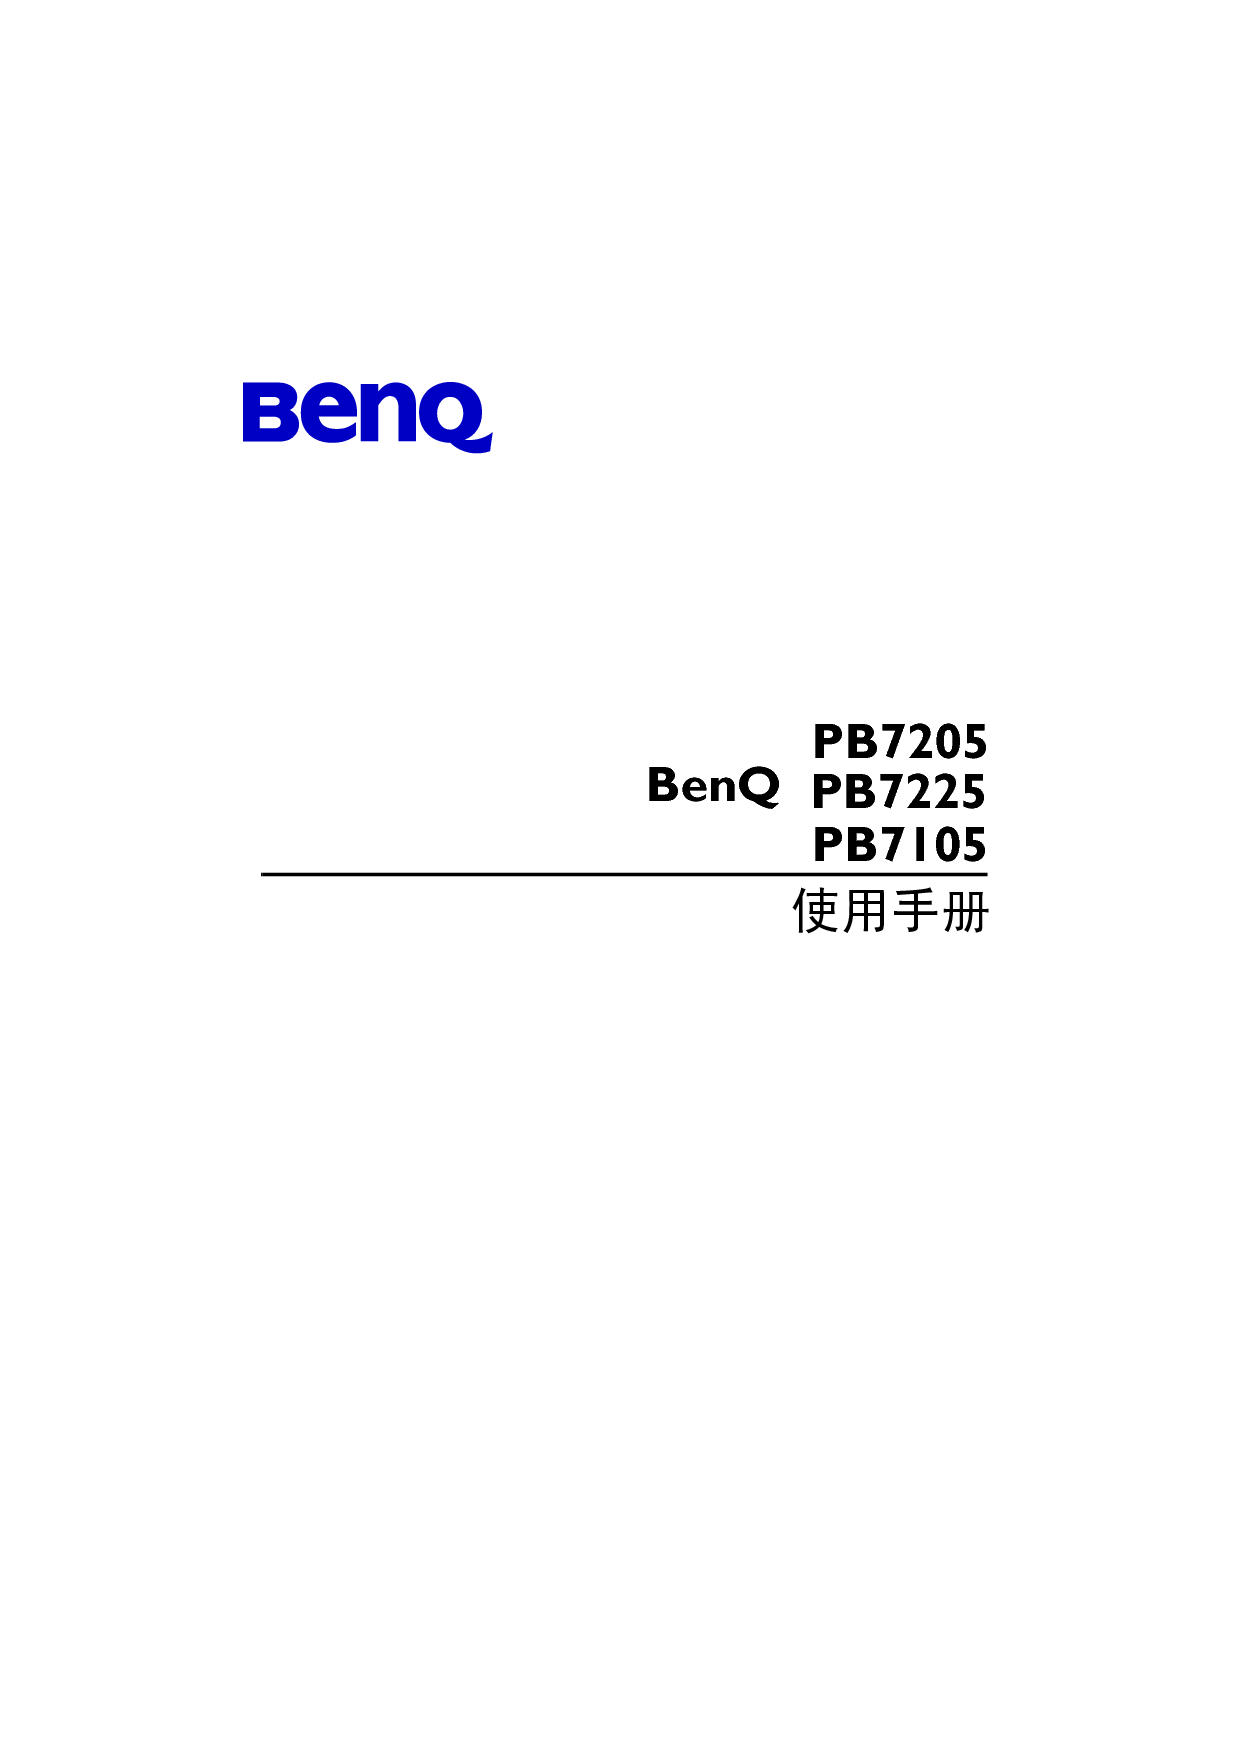 明基 Benq PB7105 使用手册 封面